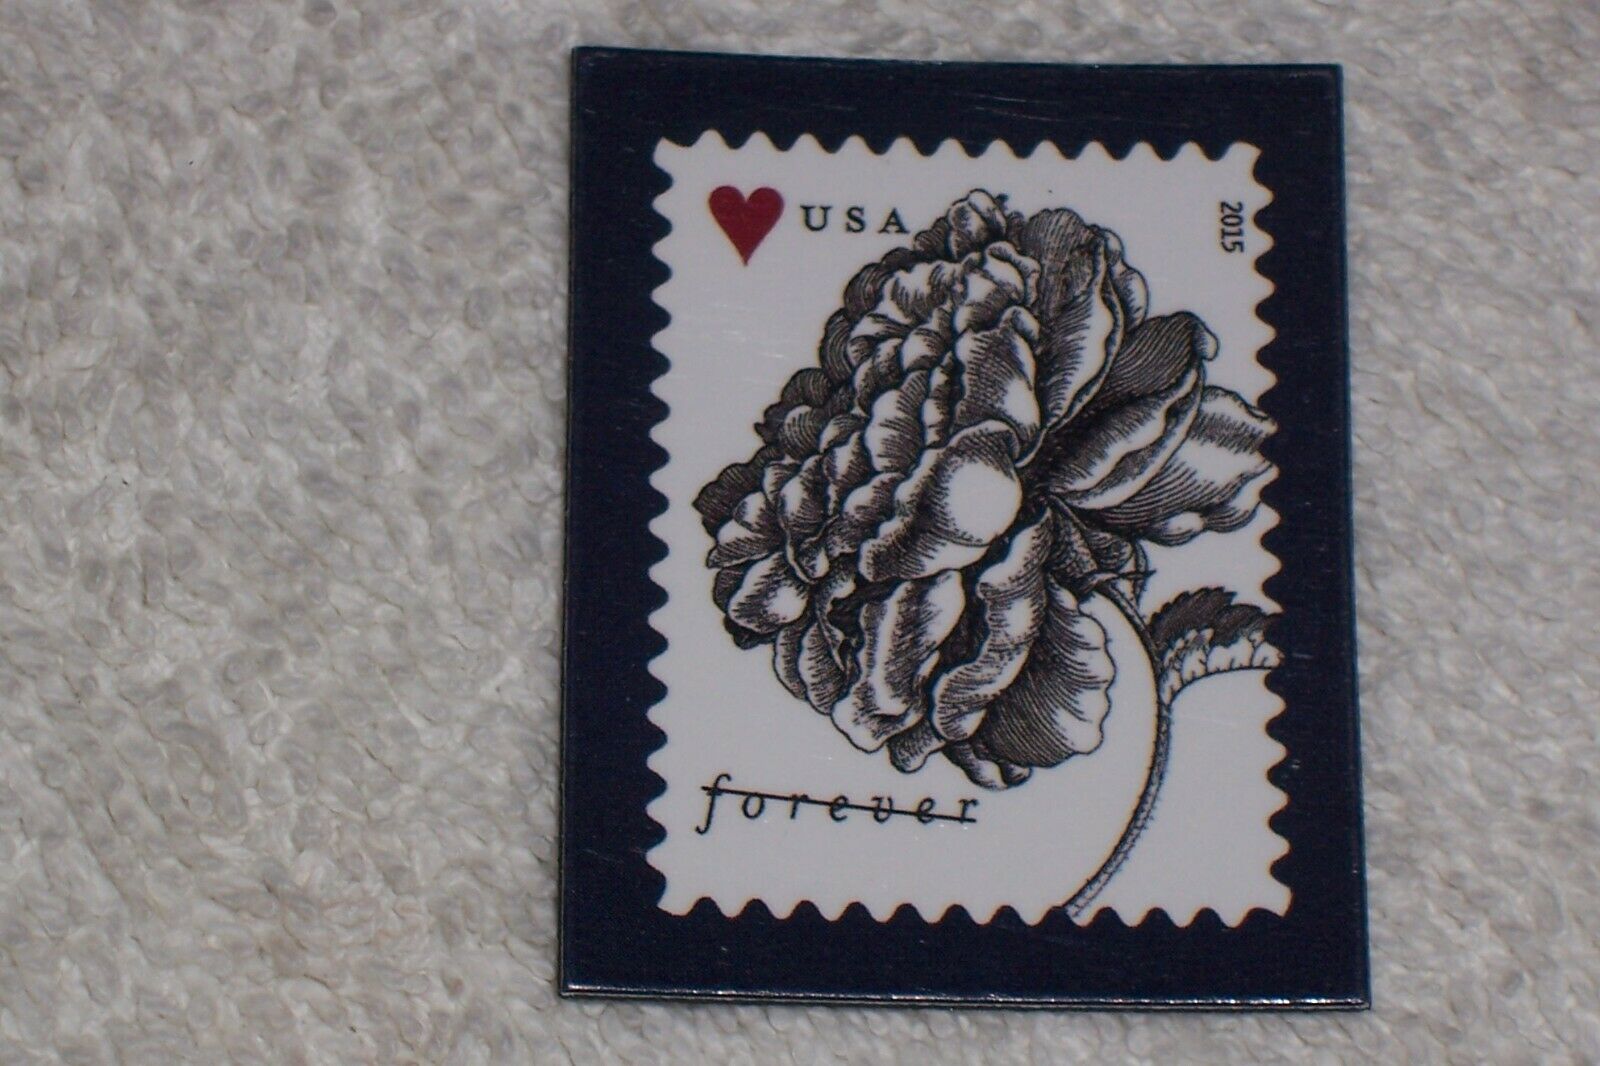 Usps #4959 Vintage Rose Wedding Series Forever Postage Stamp Promo Magnet 2015